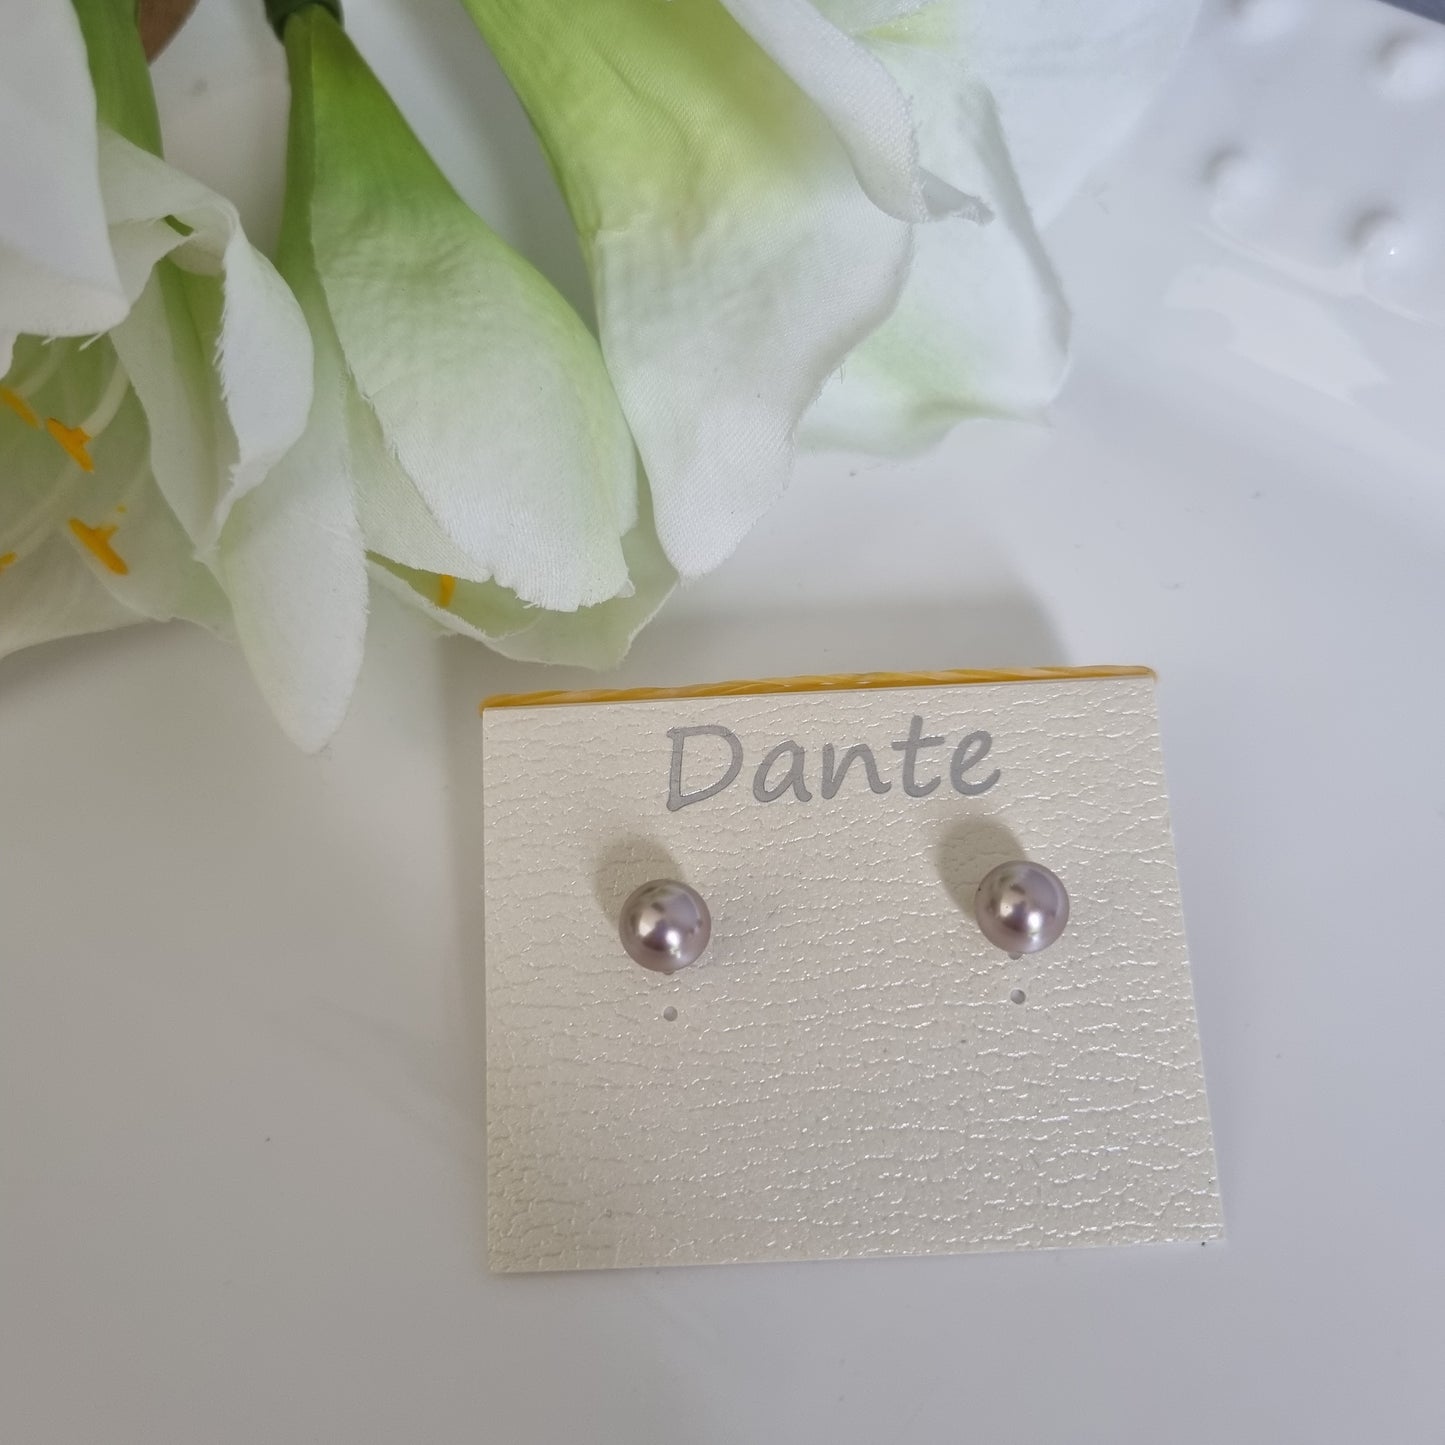 Dante pearl earrings thistle